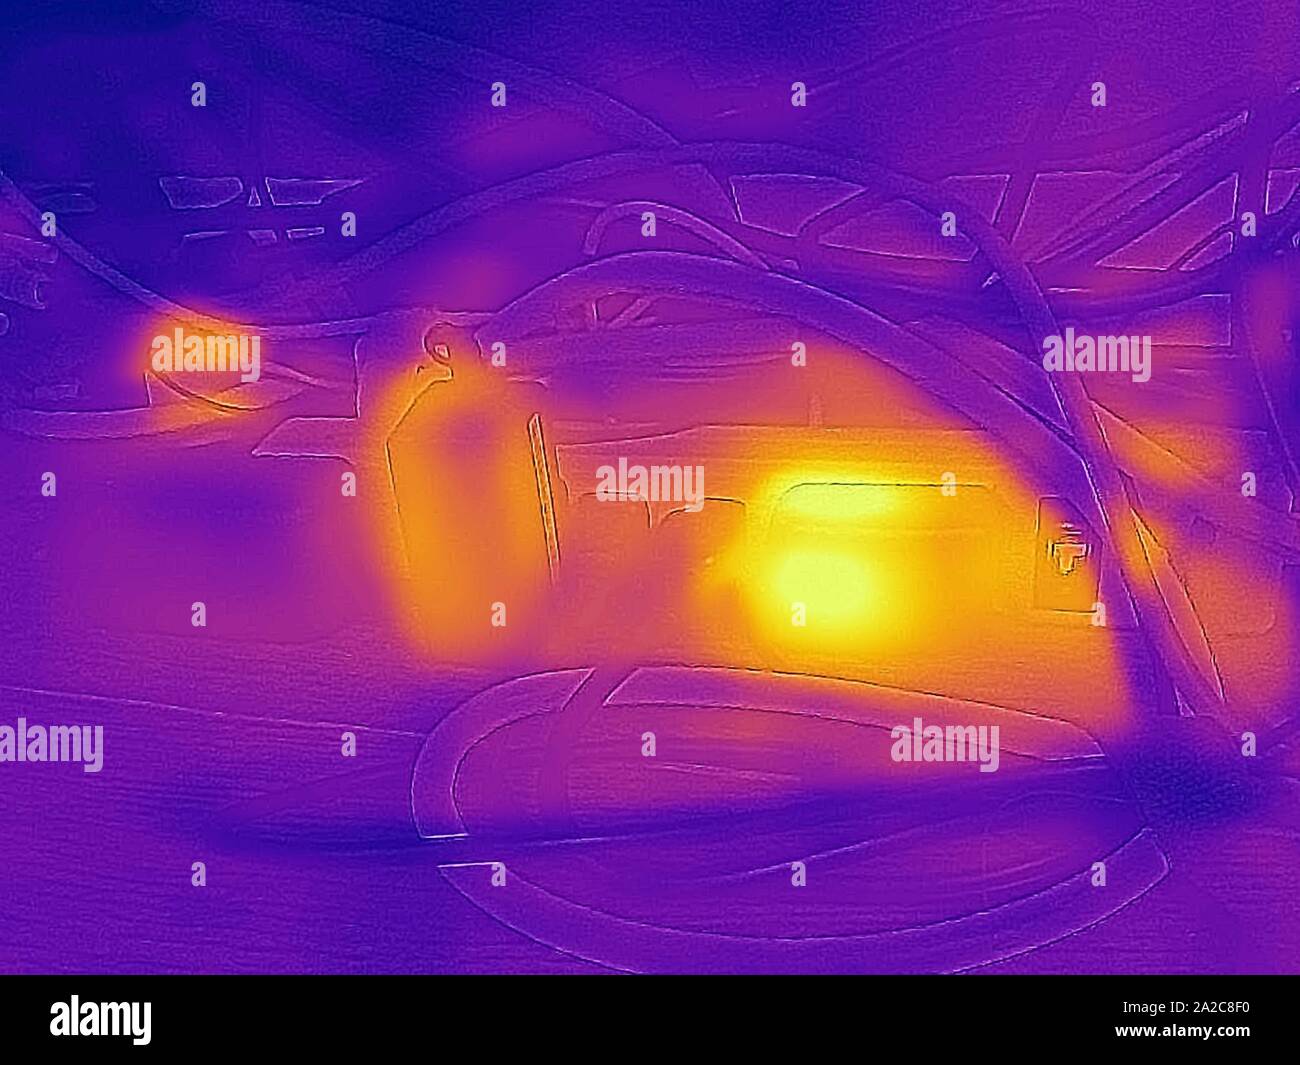 Image thermographique de caméra thermique, avec zones lumineuses correspondant à des températures plus élevées, montrant la chaleur résiduelle générée par les adaptateurs d'alimentation CA connectés à une barrette de connexion, un exemple de charge fantôme ou de perte d'alimentation de secours, appelé colloque sur la puissance vampire ou la charge fantôme, San Ramon, Californie, septembre 2019. () Banque D'Images